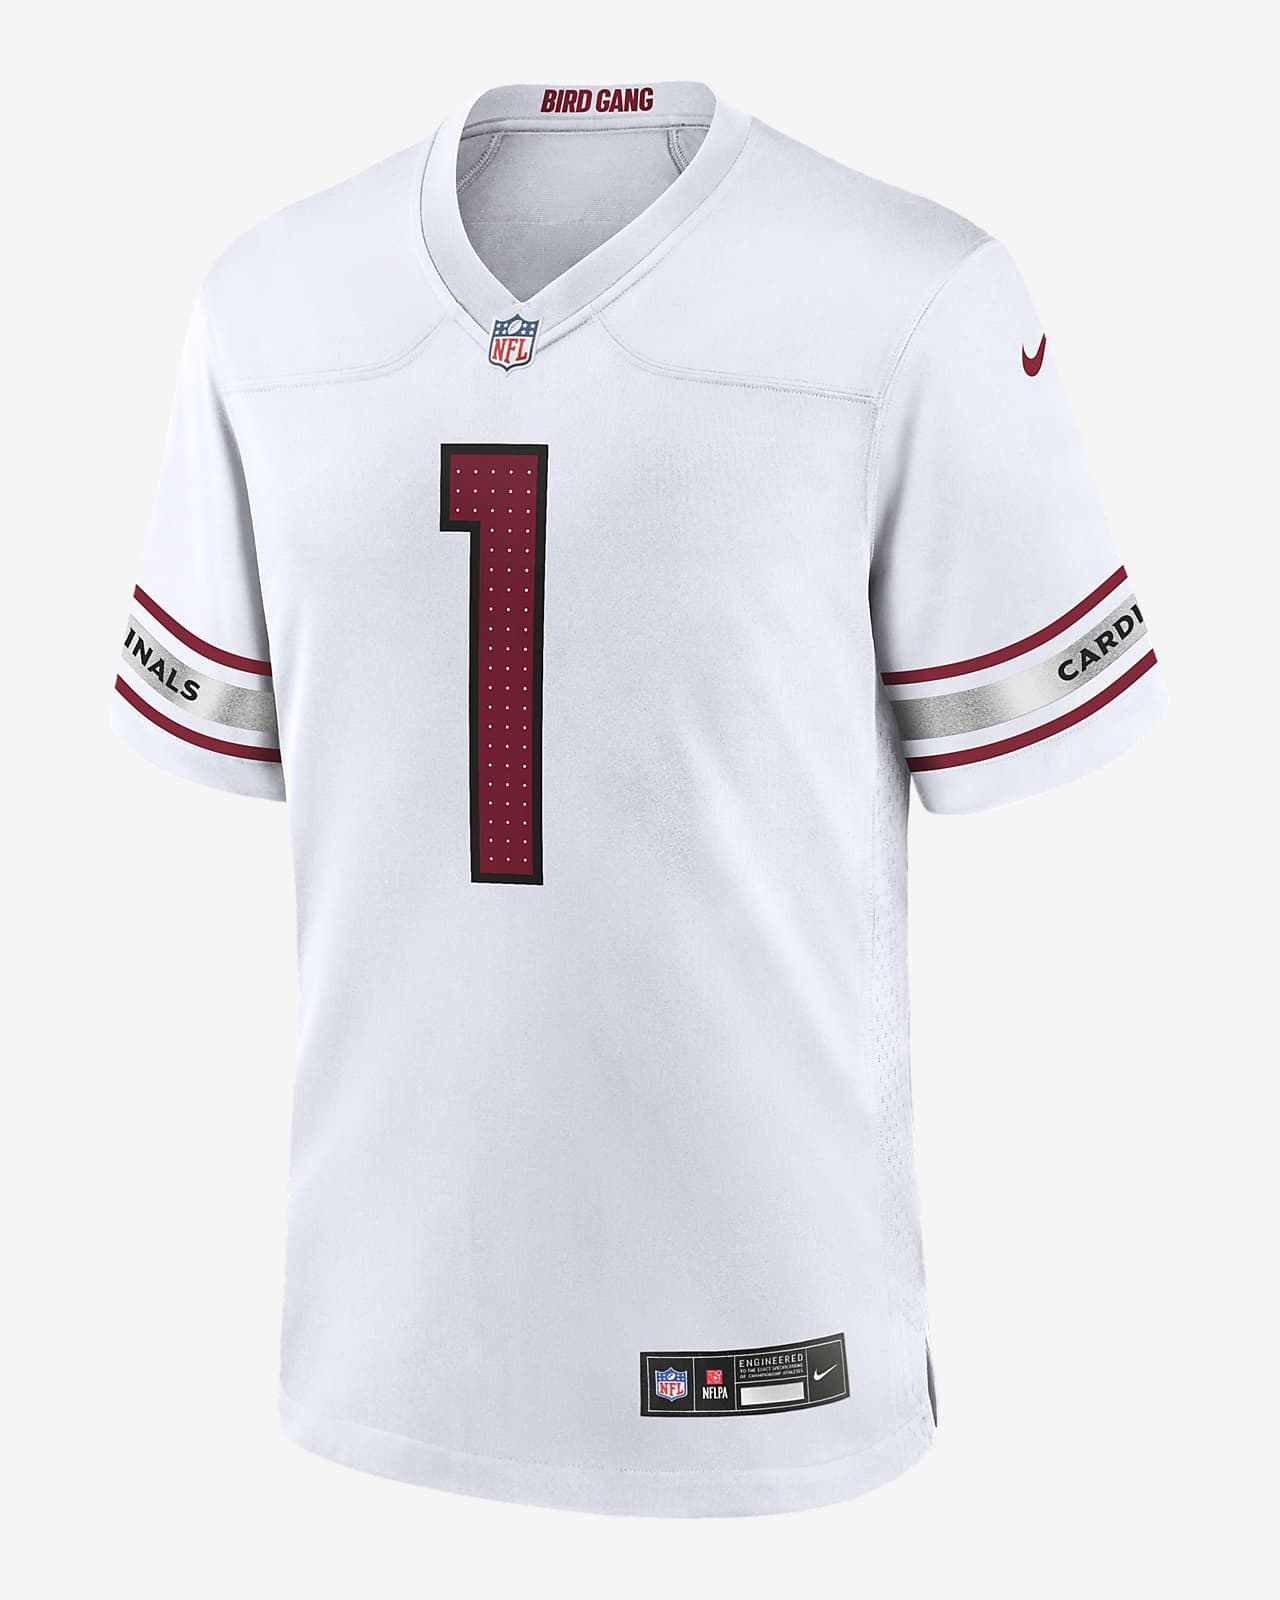 Jersey de fútbol americano Nike de la NFL Game para hombre Kyler Murray Arizona Cardinals